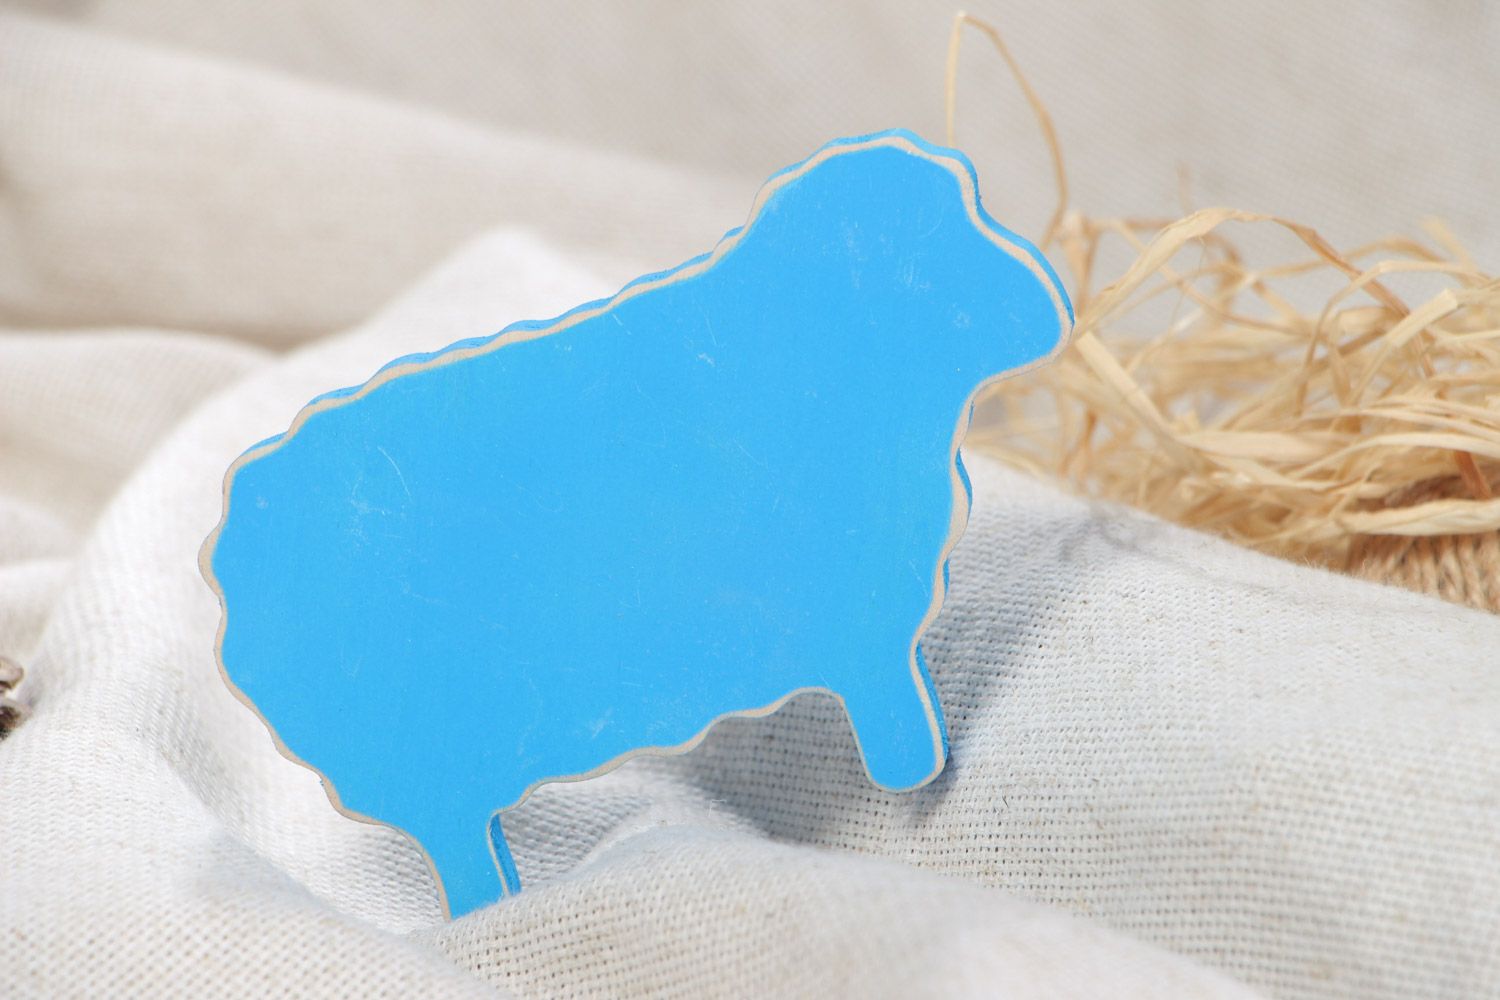 Статуэтка из фанеры расписная голубая фигурка овечки ручная работа фото 1